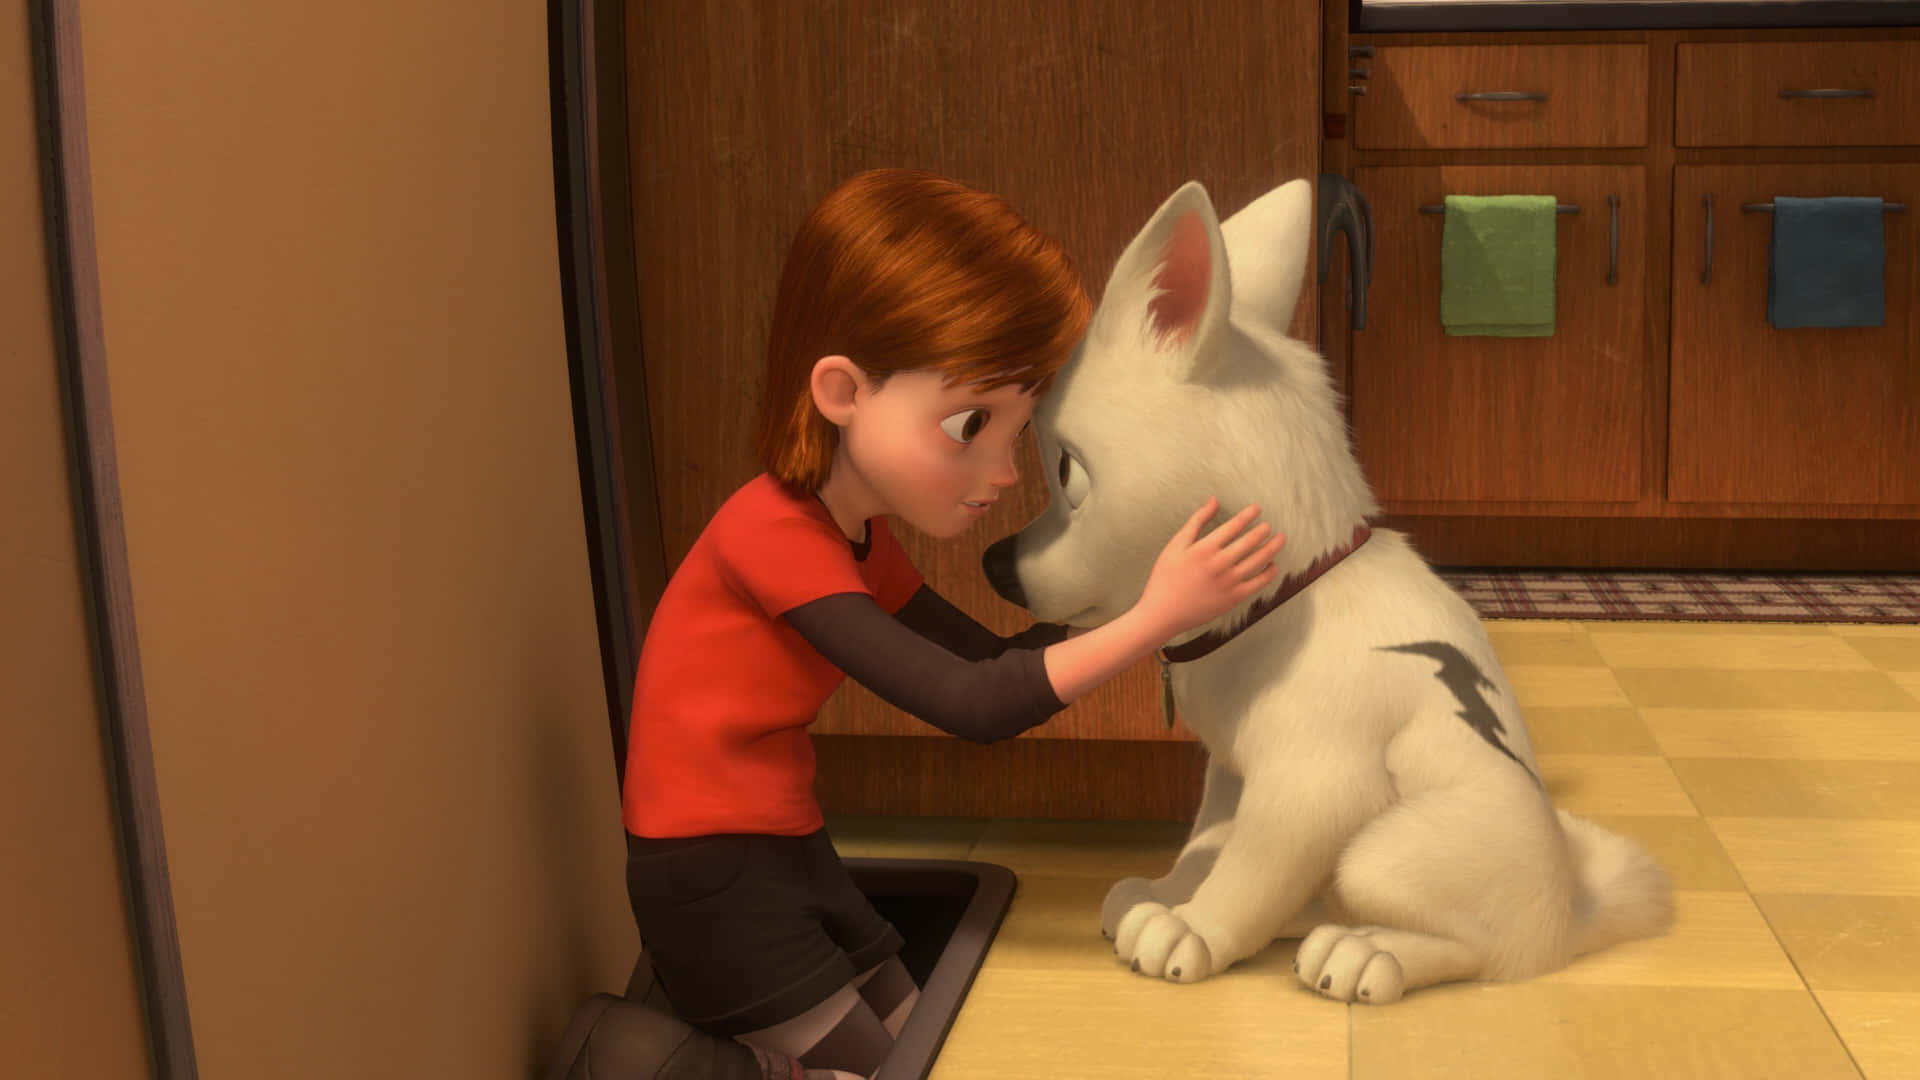 Einmädchen Streichelt In Einem Animierten Film Einen Weißen Hund.